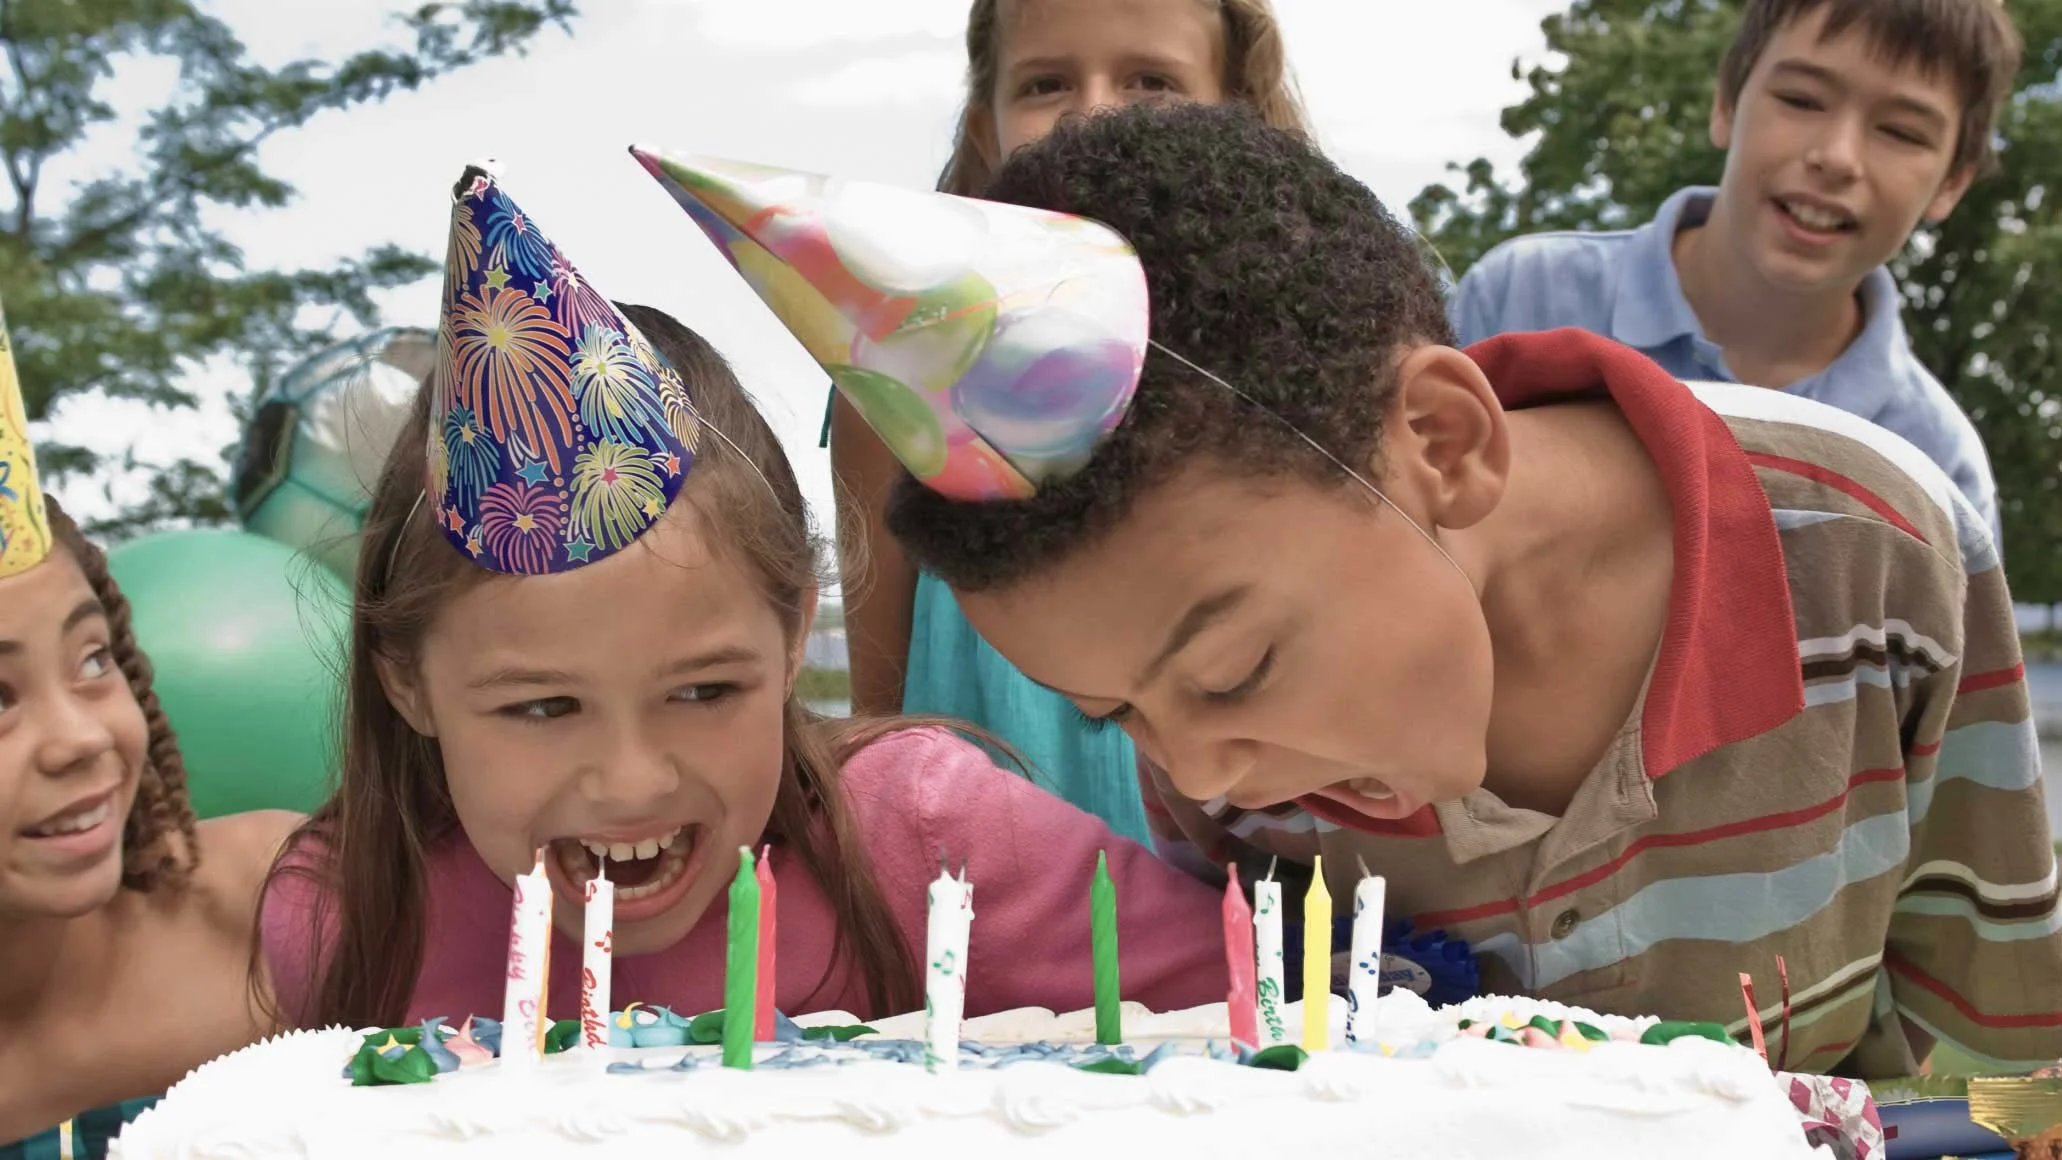 Segundo cumpleaños: ideas para planear una fiesta divertida